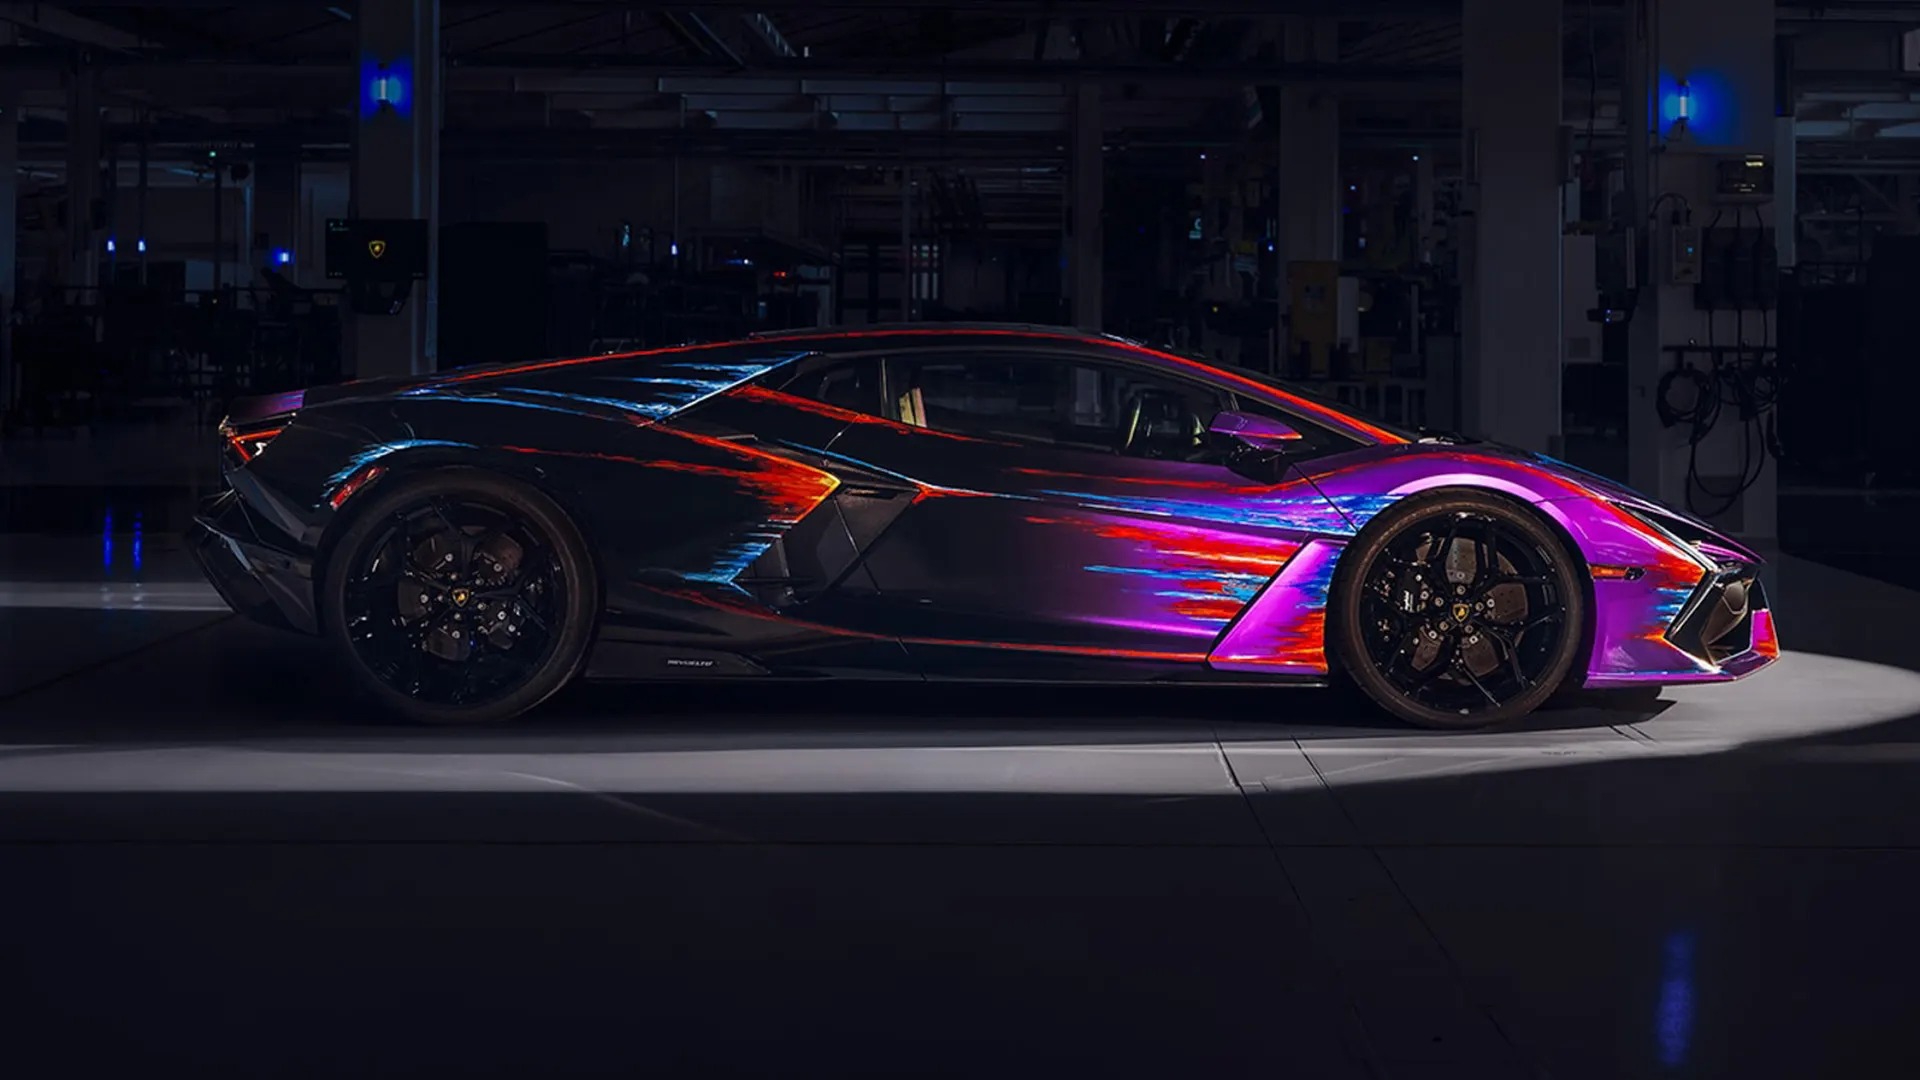 Chiếc Lamborghini Revuelto ‘tốn công tốn sức’ nhất là đây: Mất 435 tiếng sơn thủ công, 220 tiếng độ nội thất- Ảnh 3.